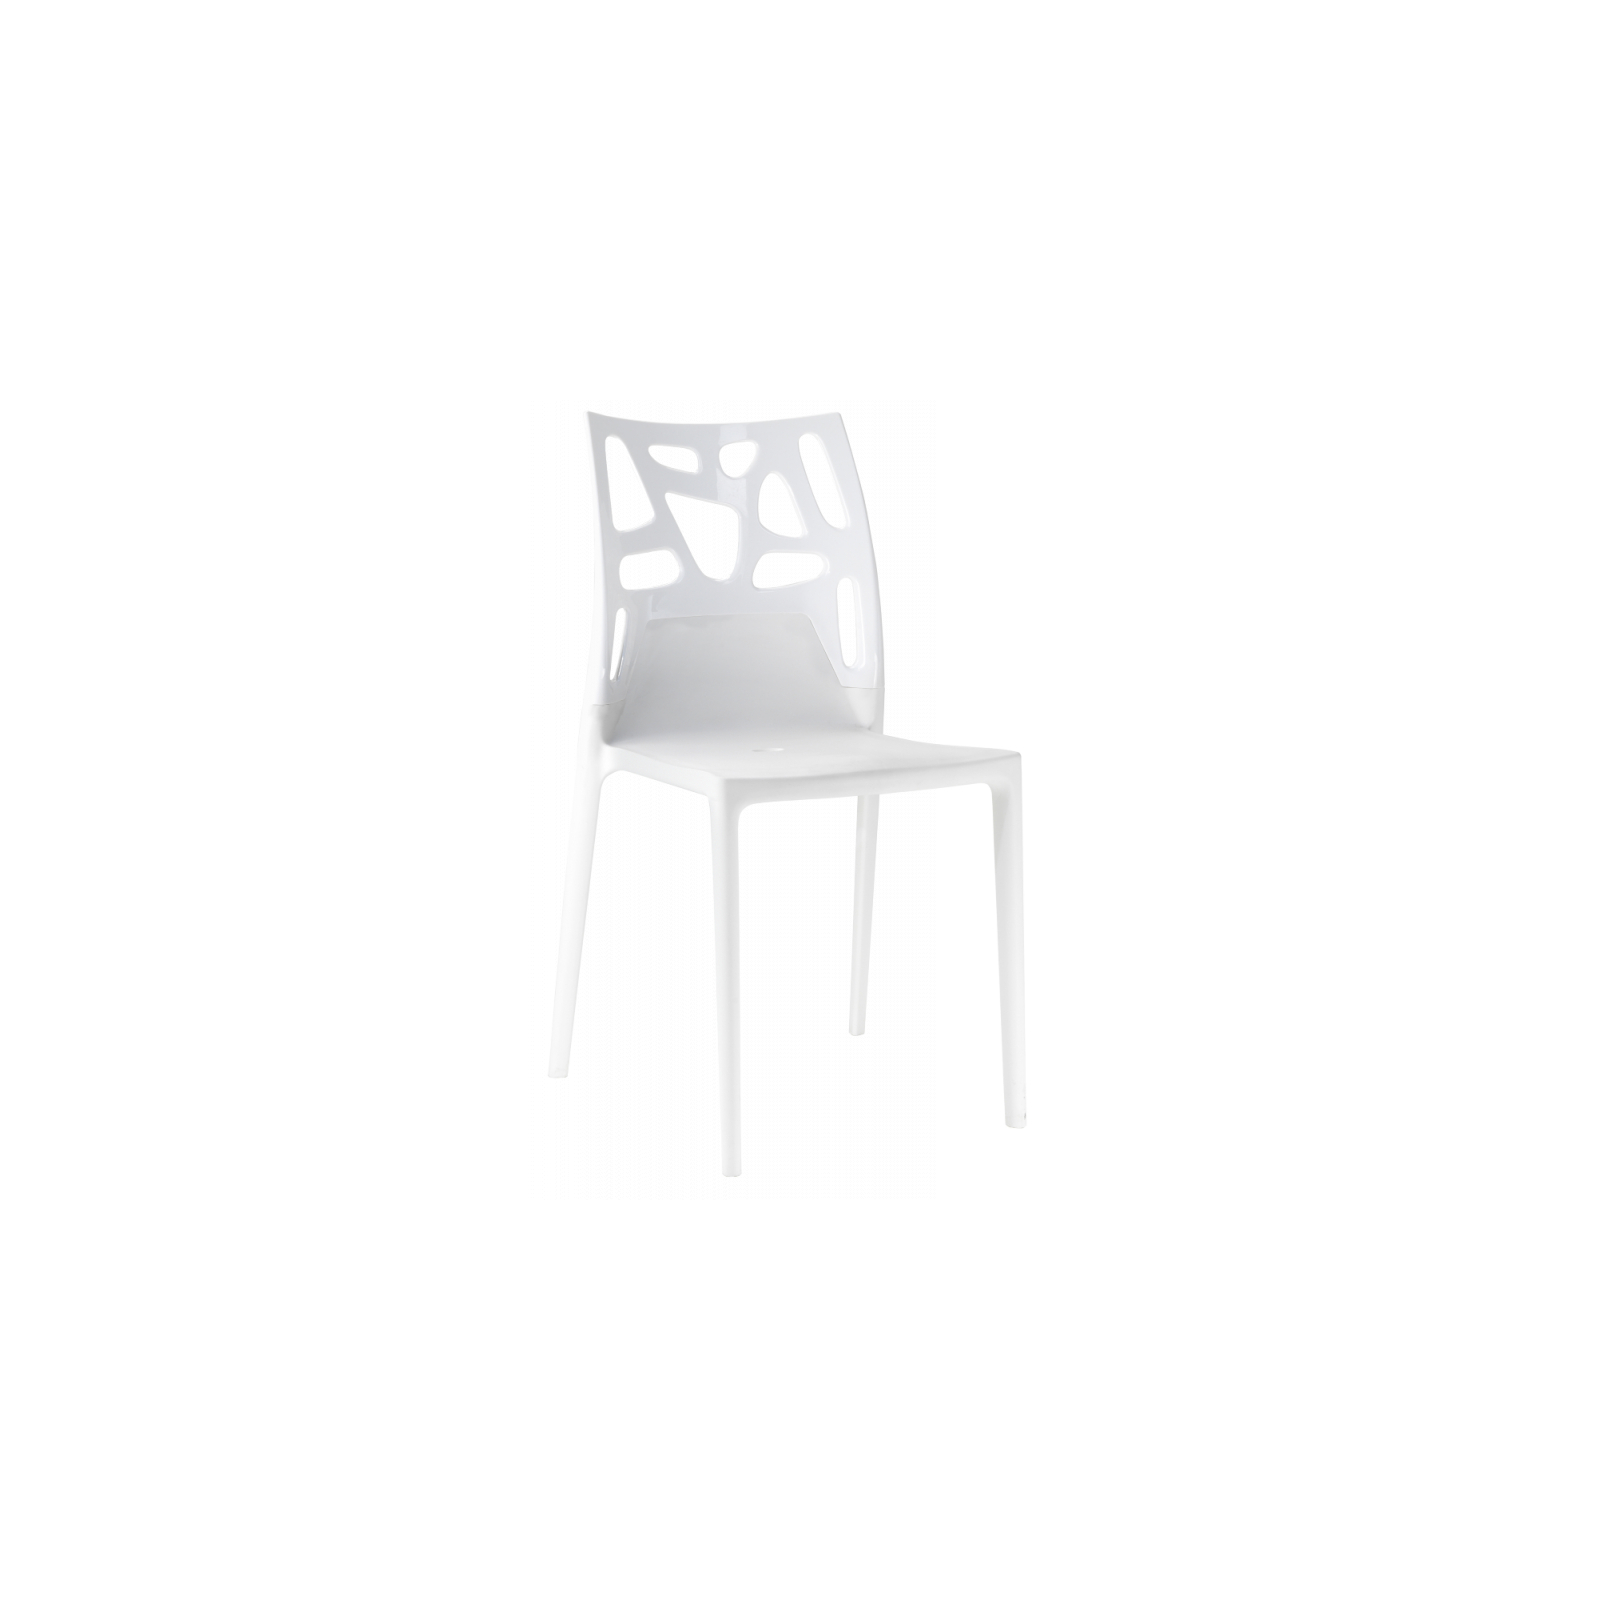 Кухонный стул PAPATYA ego-rock, сиденье белое, верх прозрачно-чистый (2266)